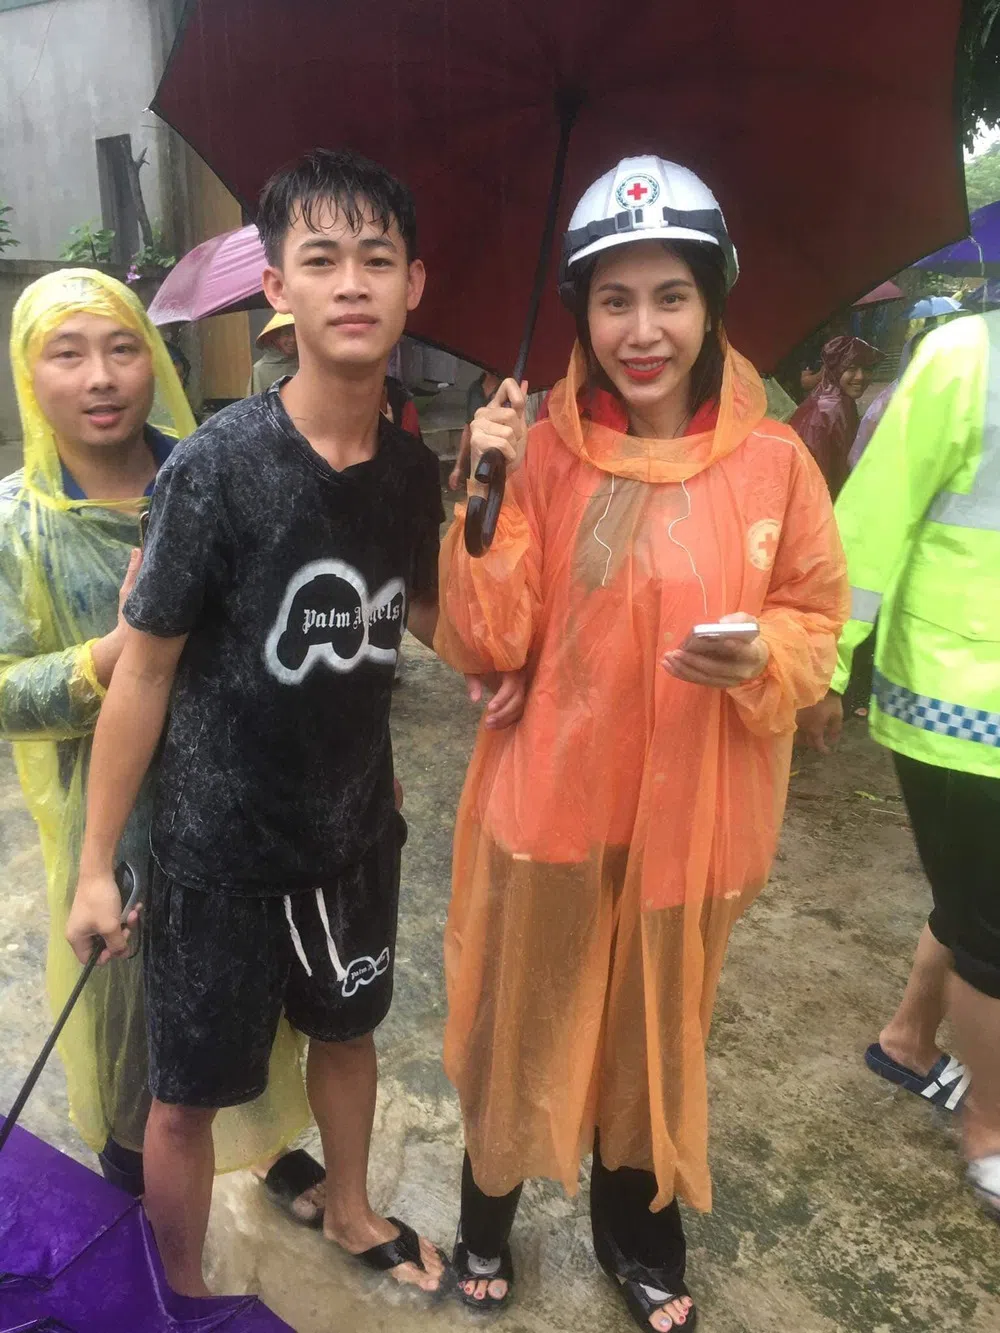 CĐM 'quay xe khét lẹt' sau khi thấy hình ảnh Thủy Tiên lội nước đội mưa đi hỗ trợ miền Trung